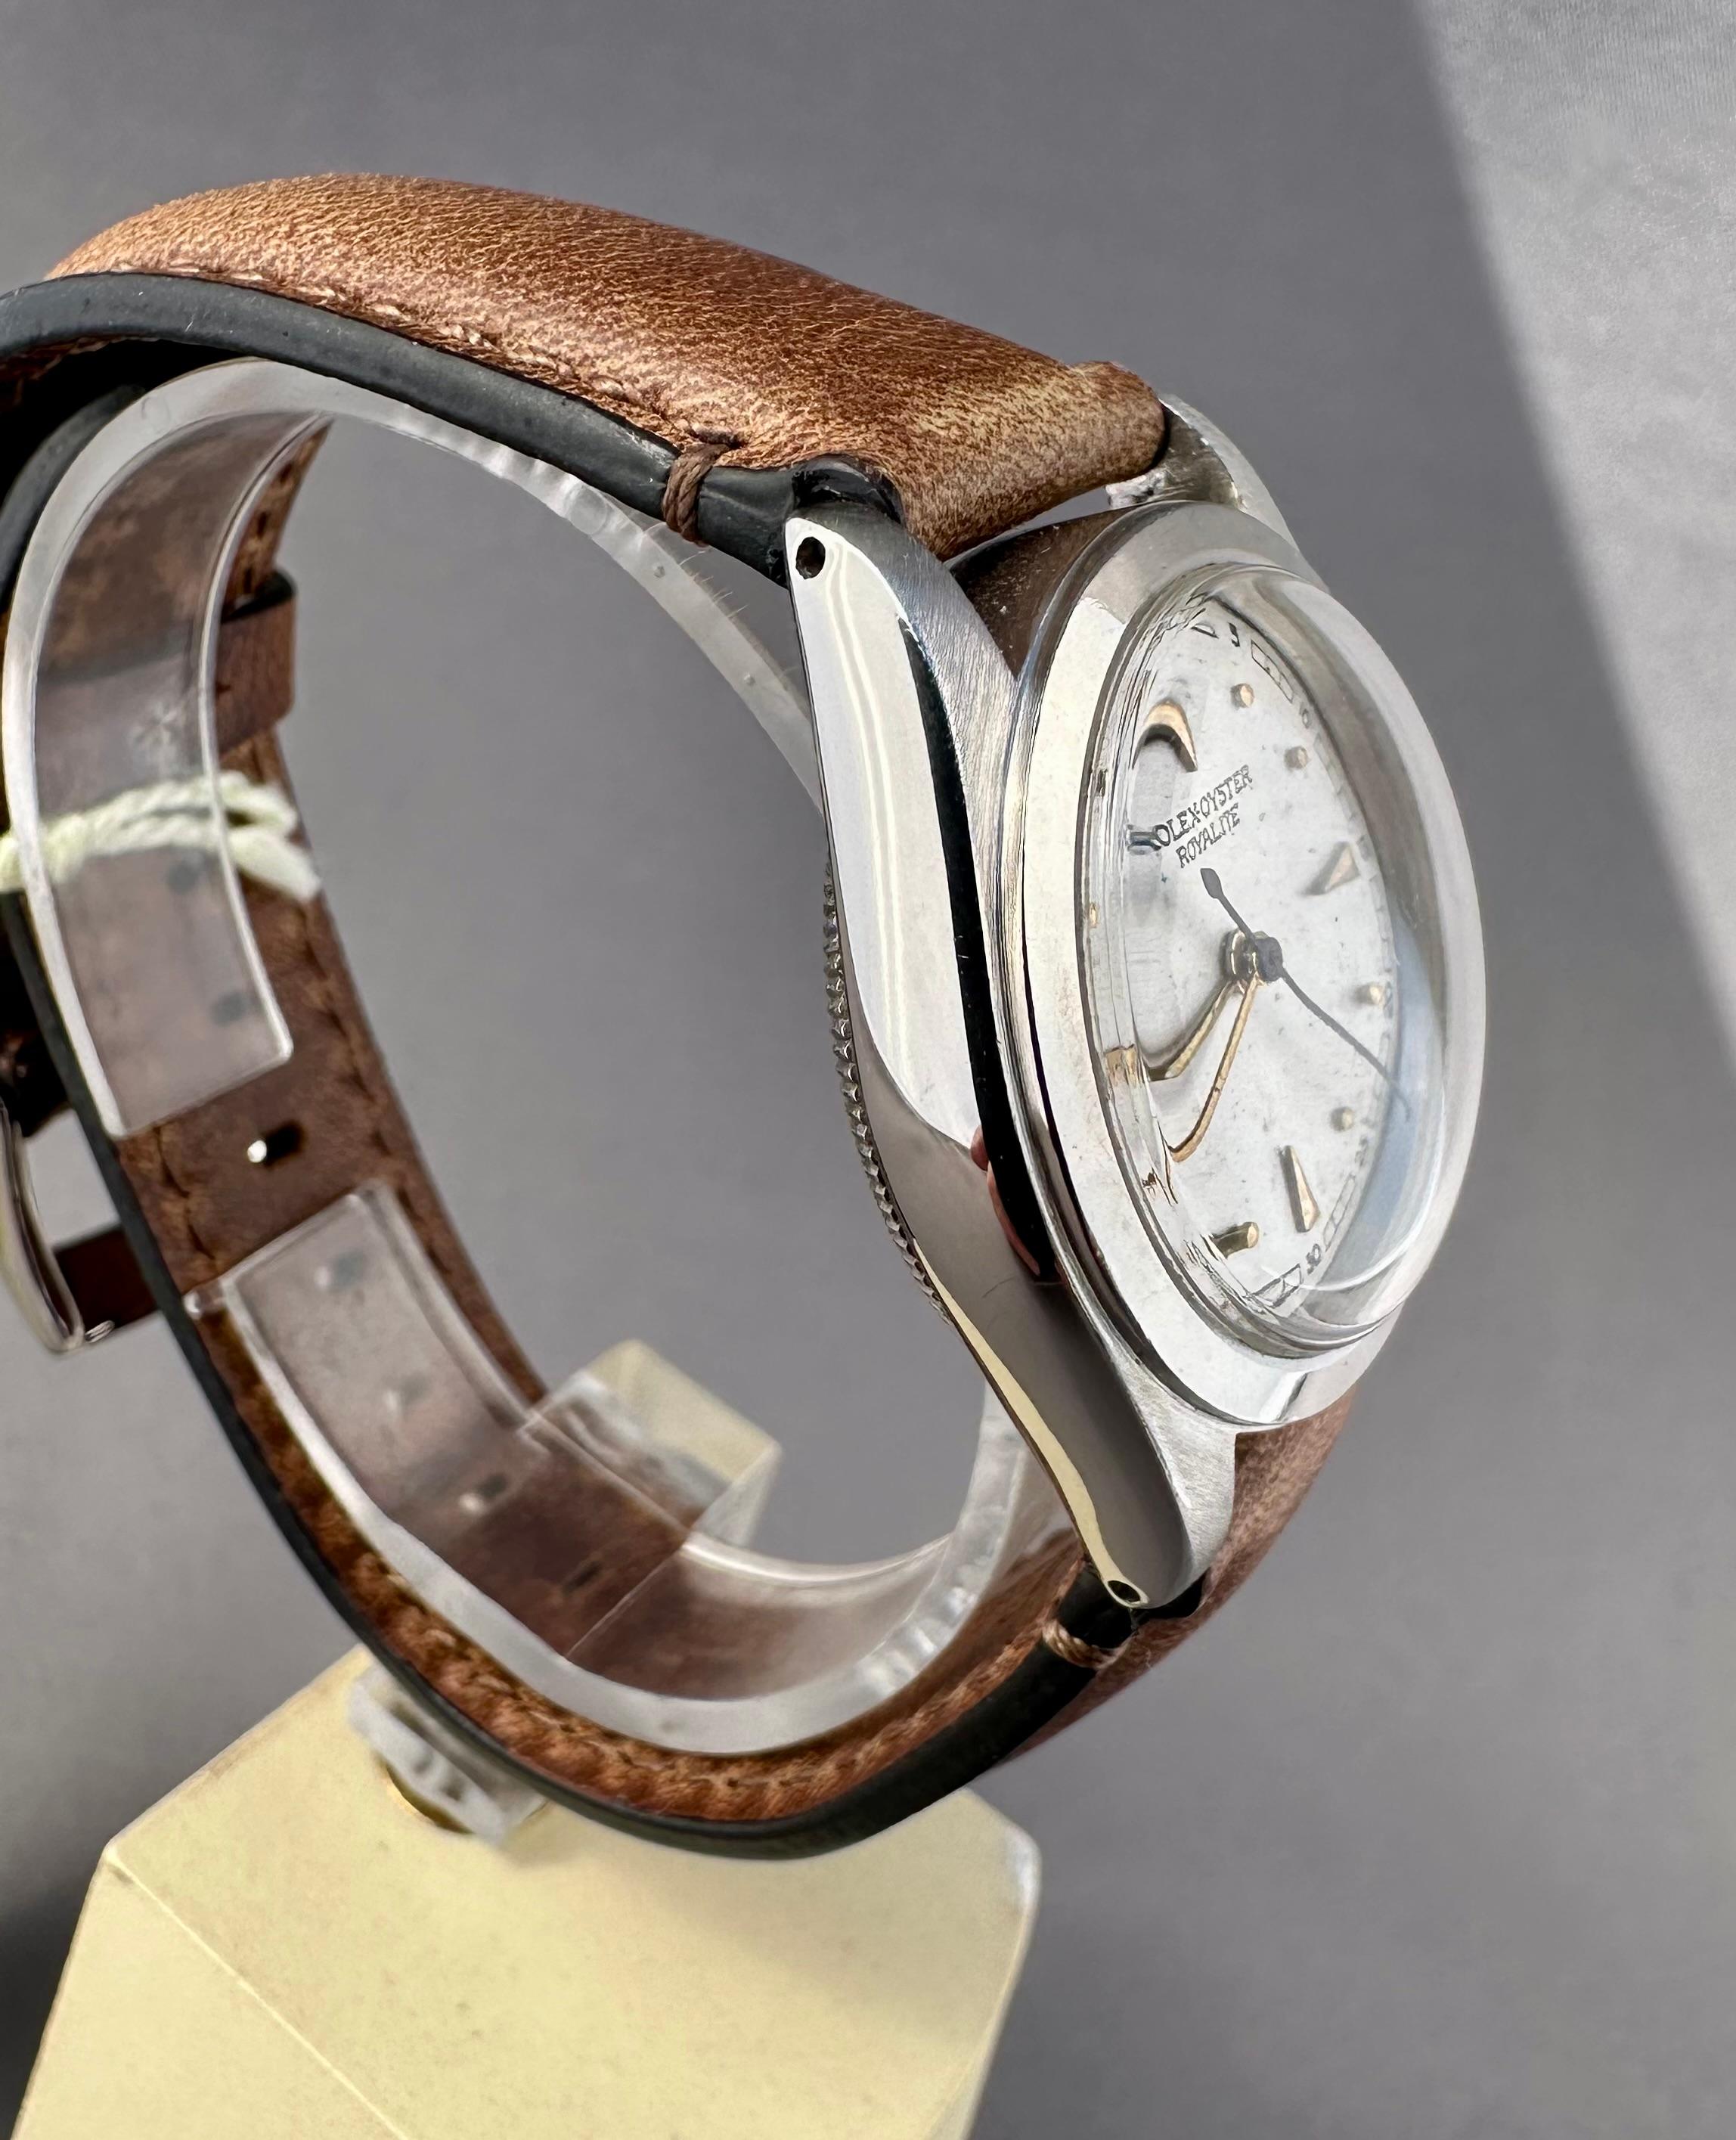 Montre vintage Rolex Royalite 2280 Circa 1939

Description / Condit : Toutes les montres ont été examinées et révisées par des professionnels avant d'être mises en vente. Ce modèle a été fabriqué en acier inoxydable et possède un boîtier et une